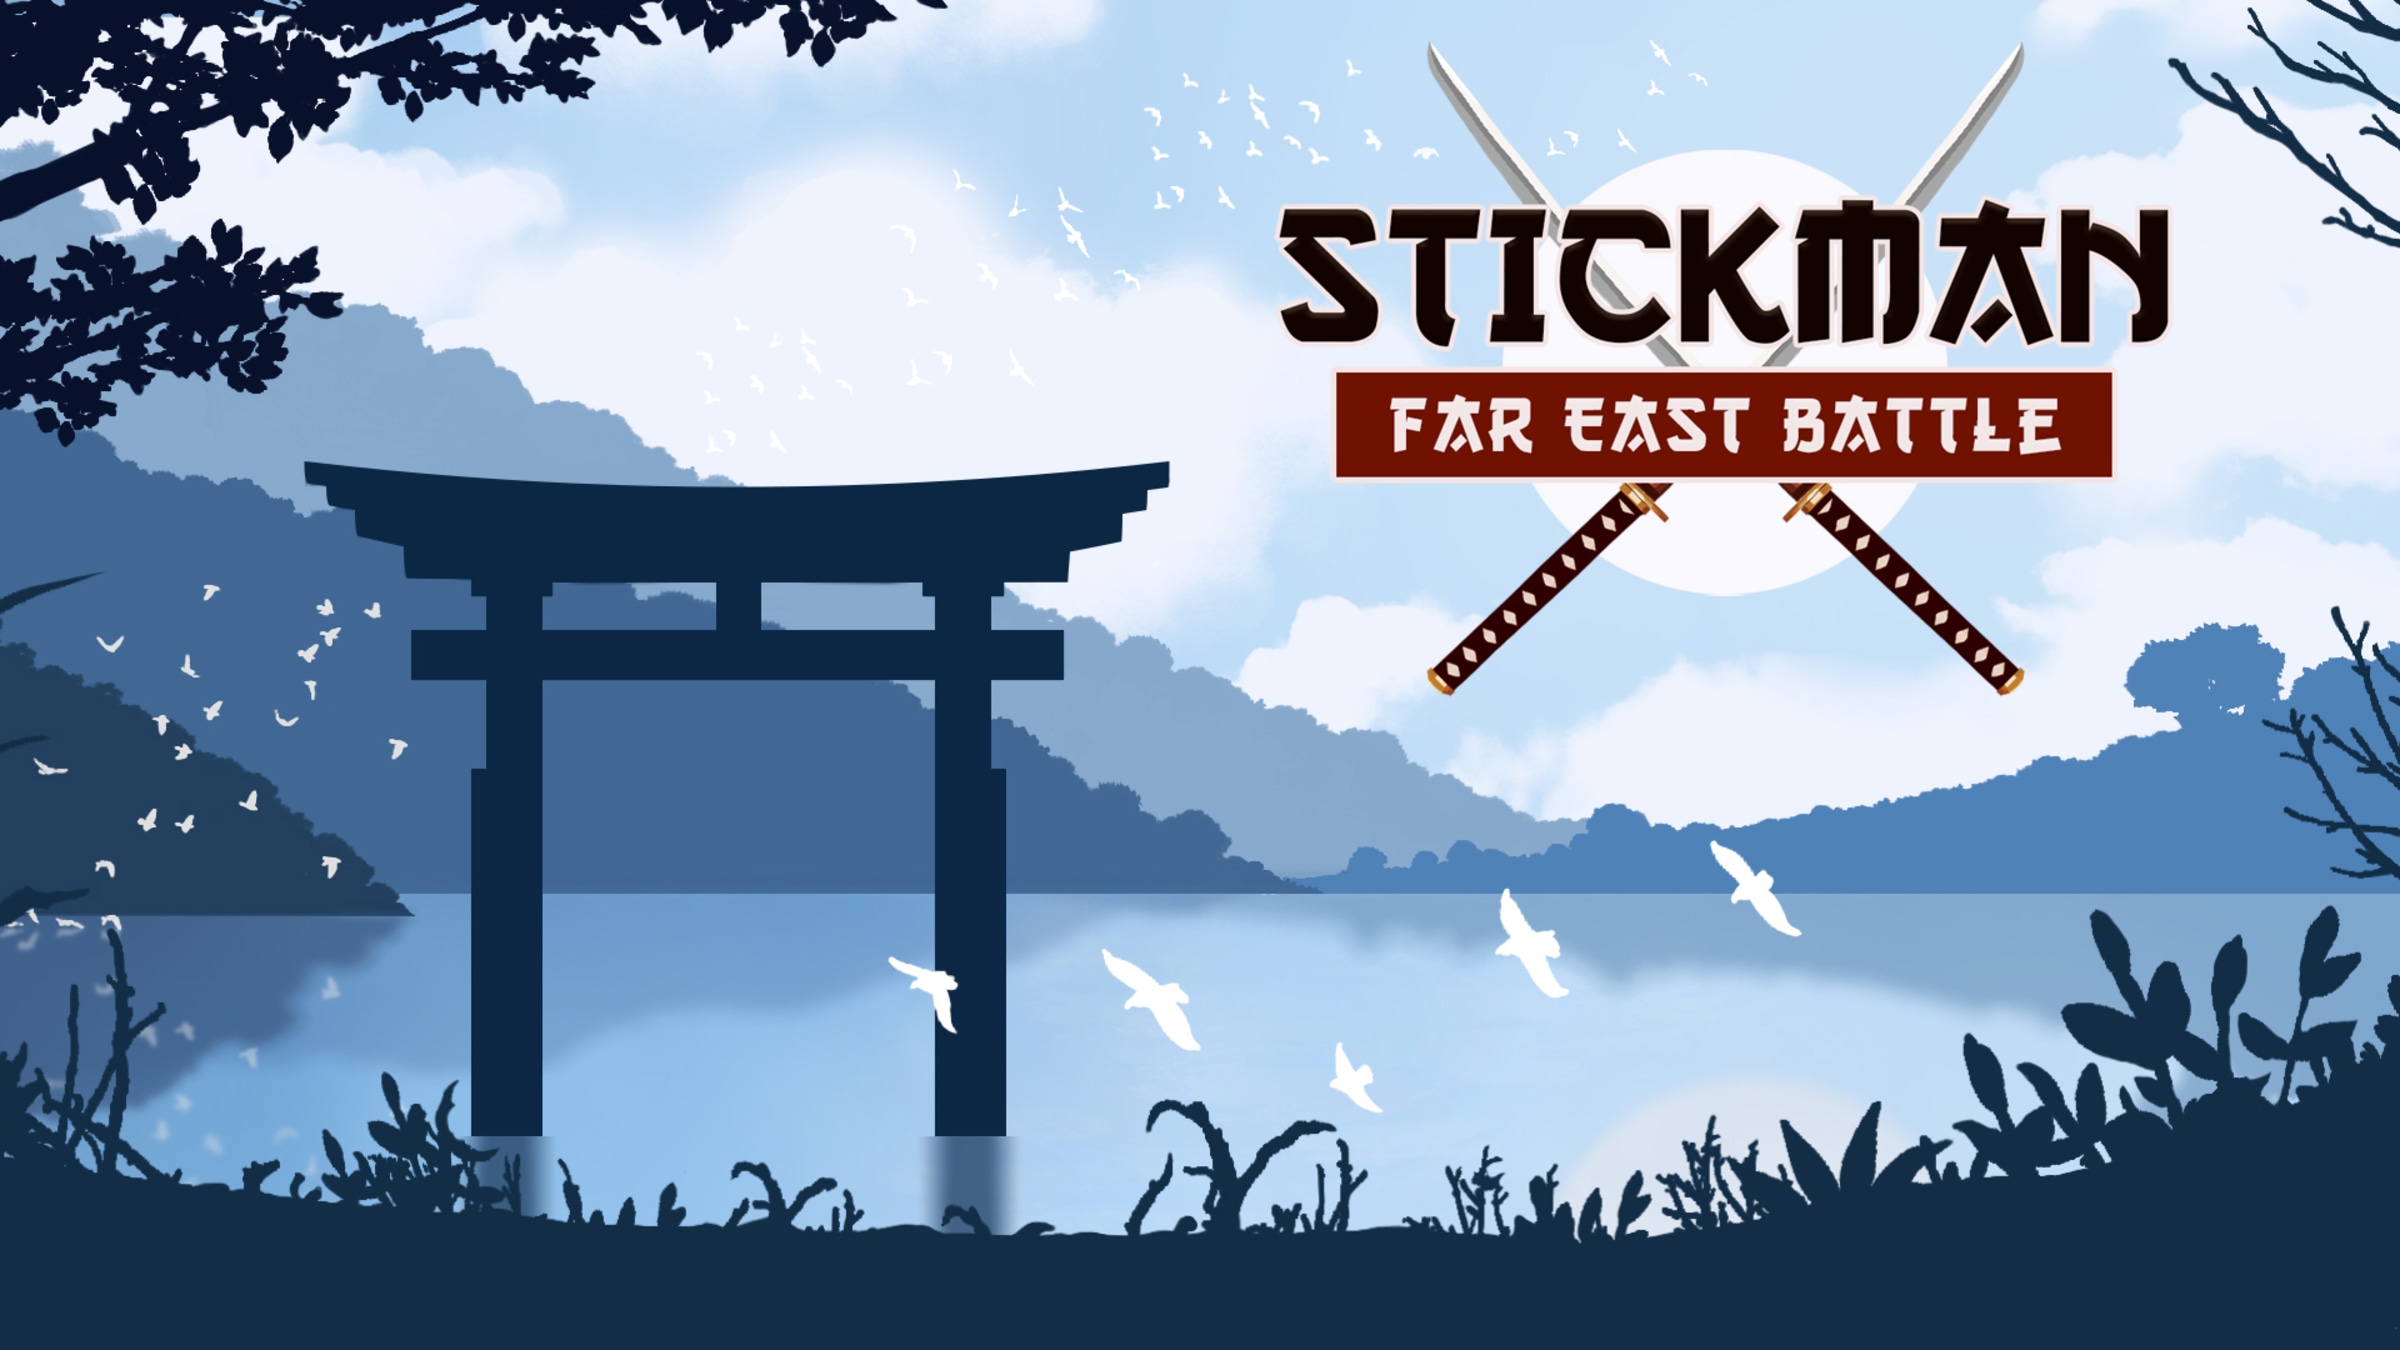 stickman games: Stickman Bloody Surgeon